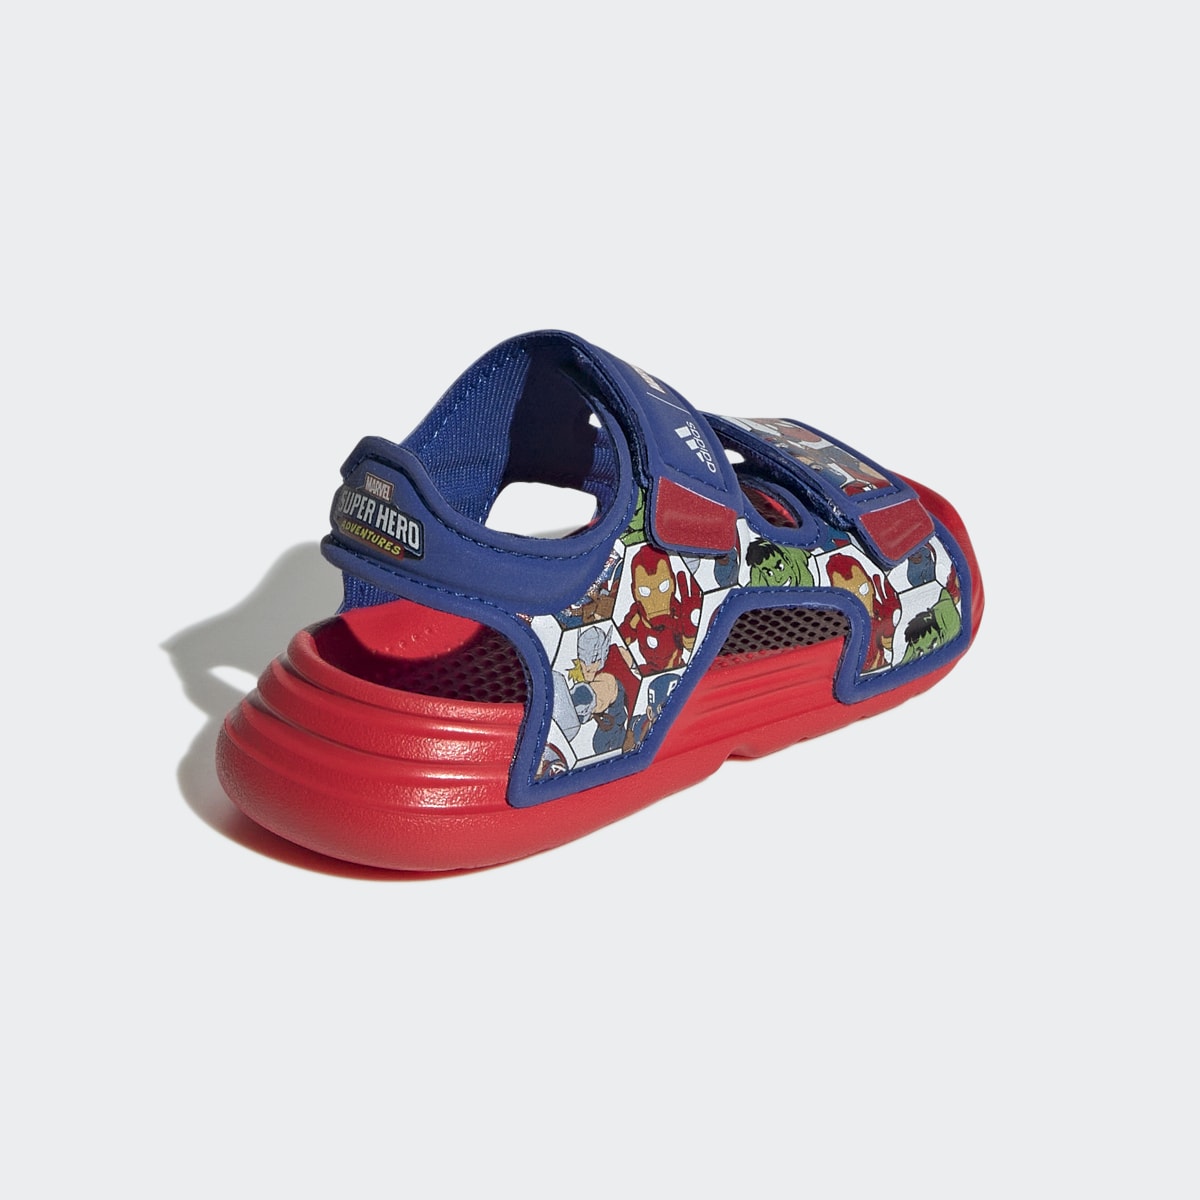 Adidas x Marvel AltaSwim Super Hero Adventures Sandals. 6